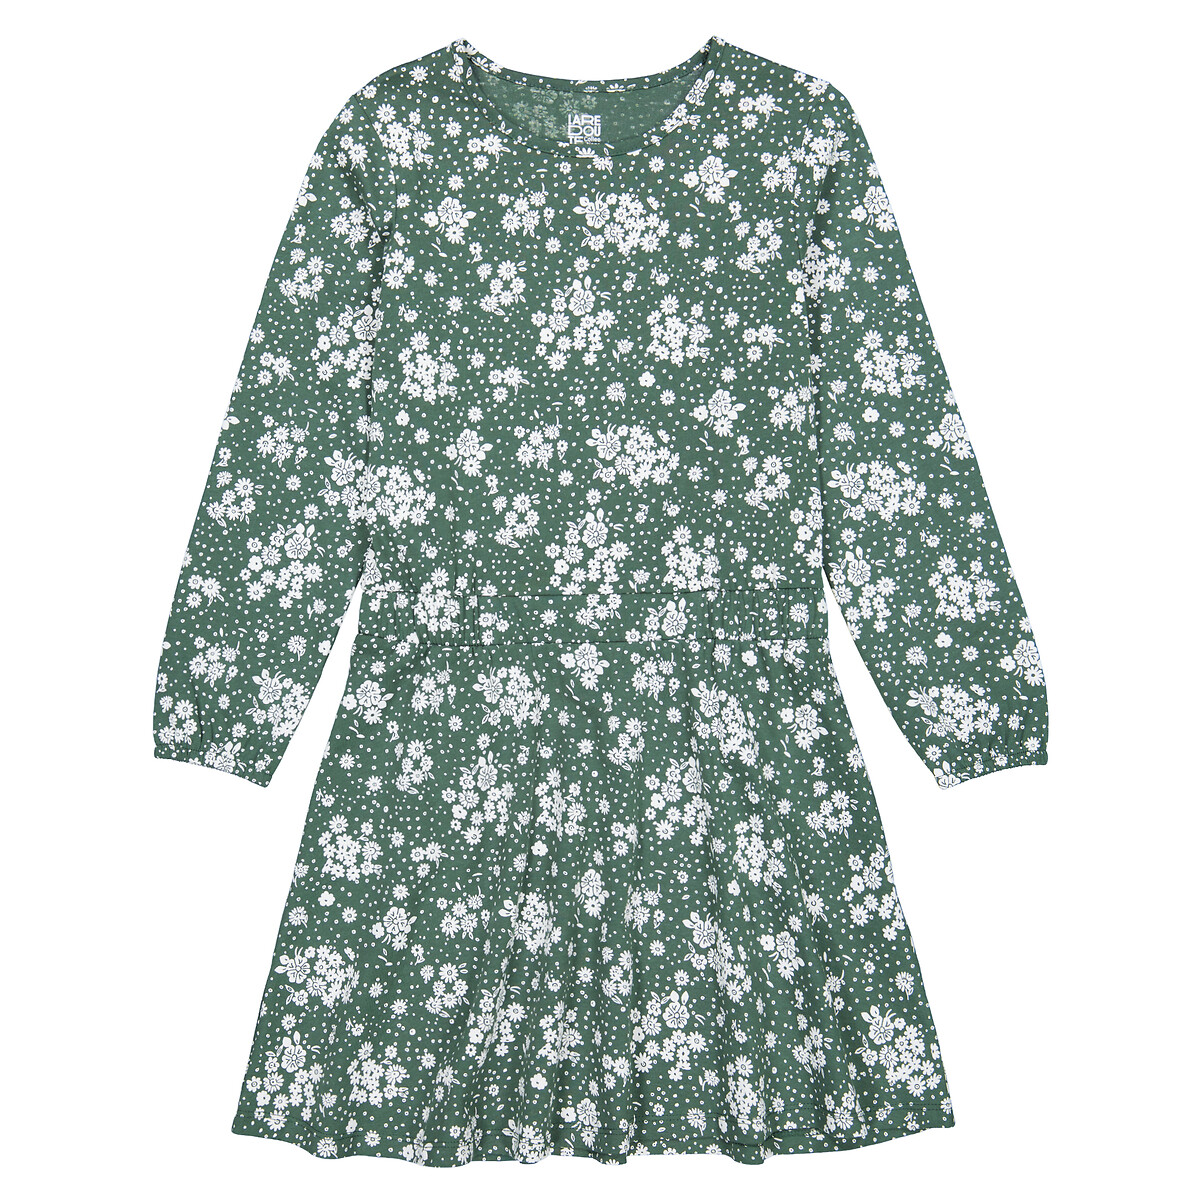 Платье С длинными рукавами цветочный принт 4 года - 102 см зеленый LaRedoute, размер 4 года - 102 см - фото 3